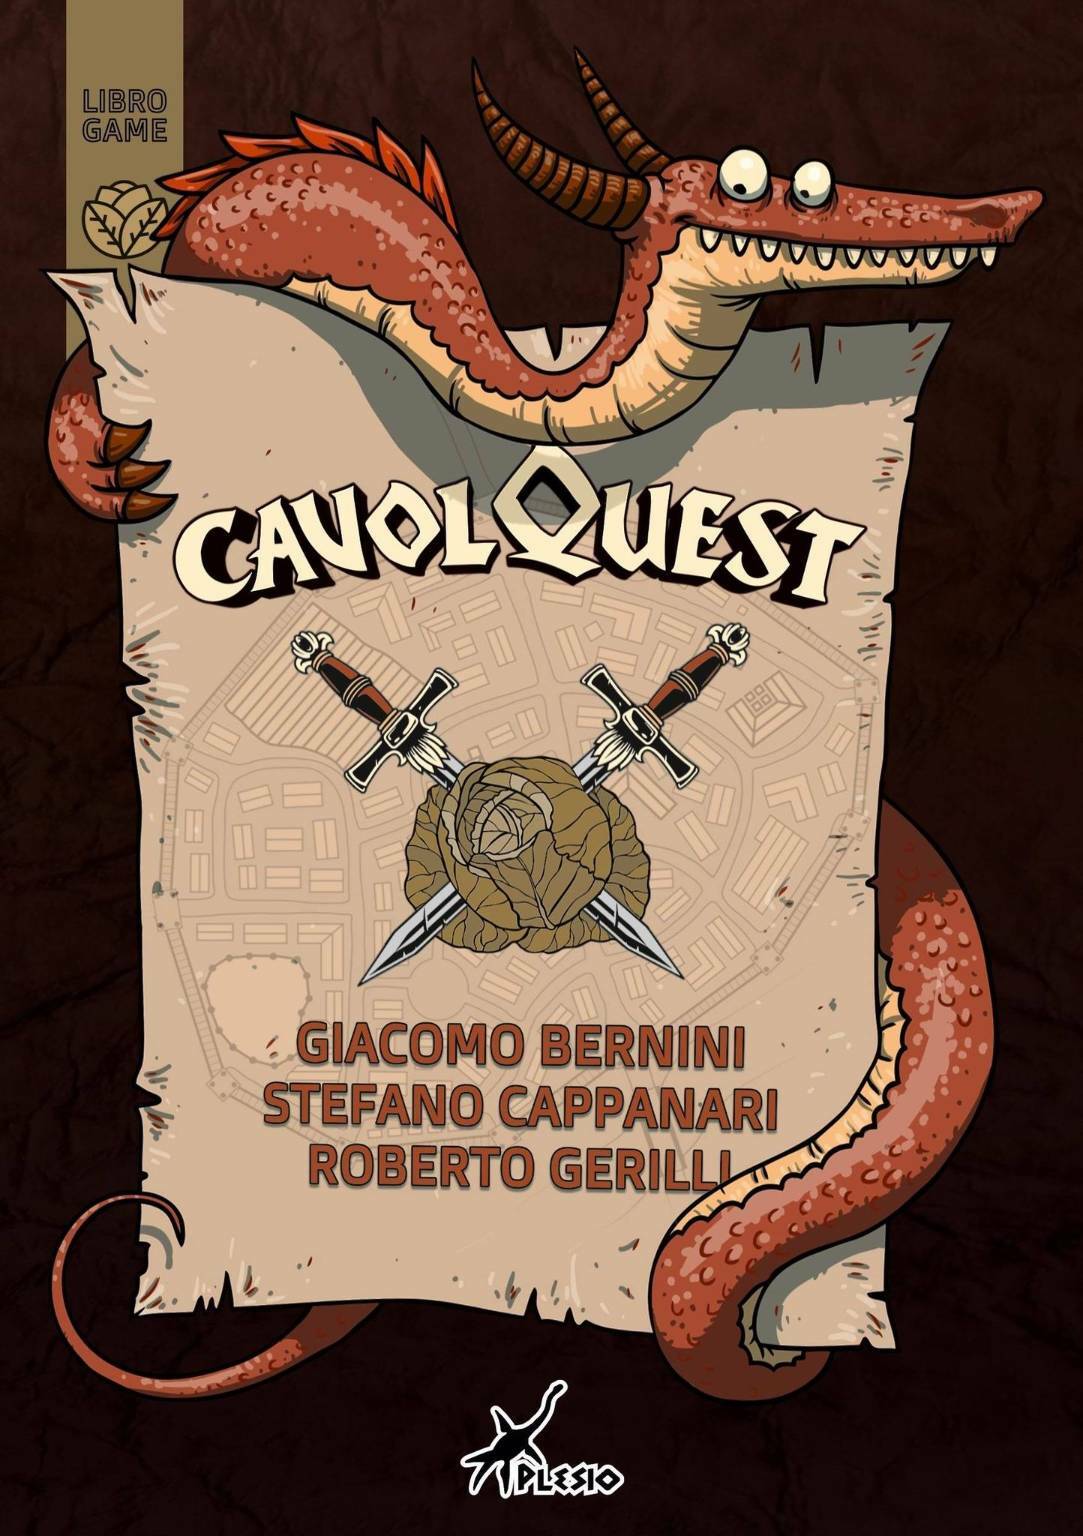 Dietro l’angolo: “CavolQuest” di Giacomo Bernini, Stefano Cappanari, Roberto Gerilli.